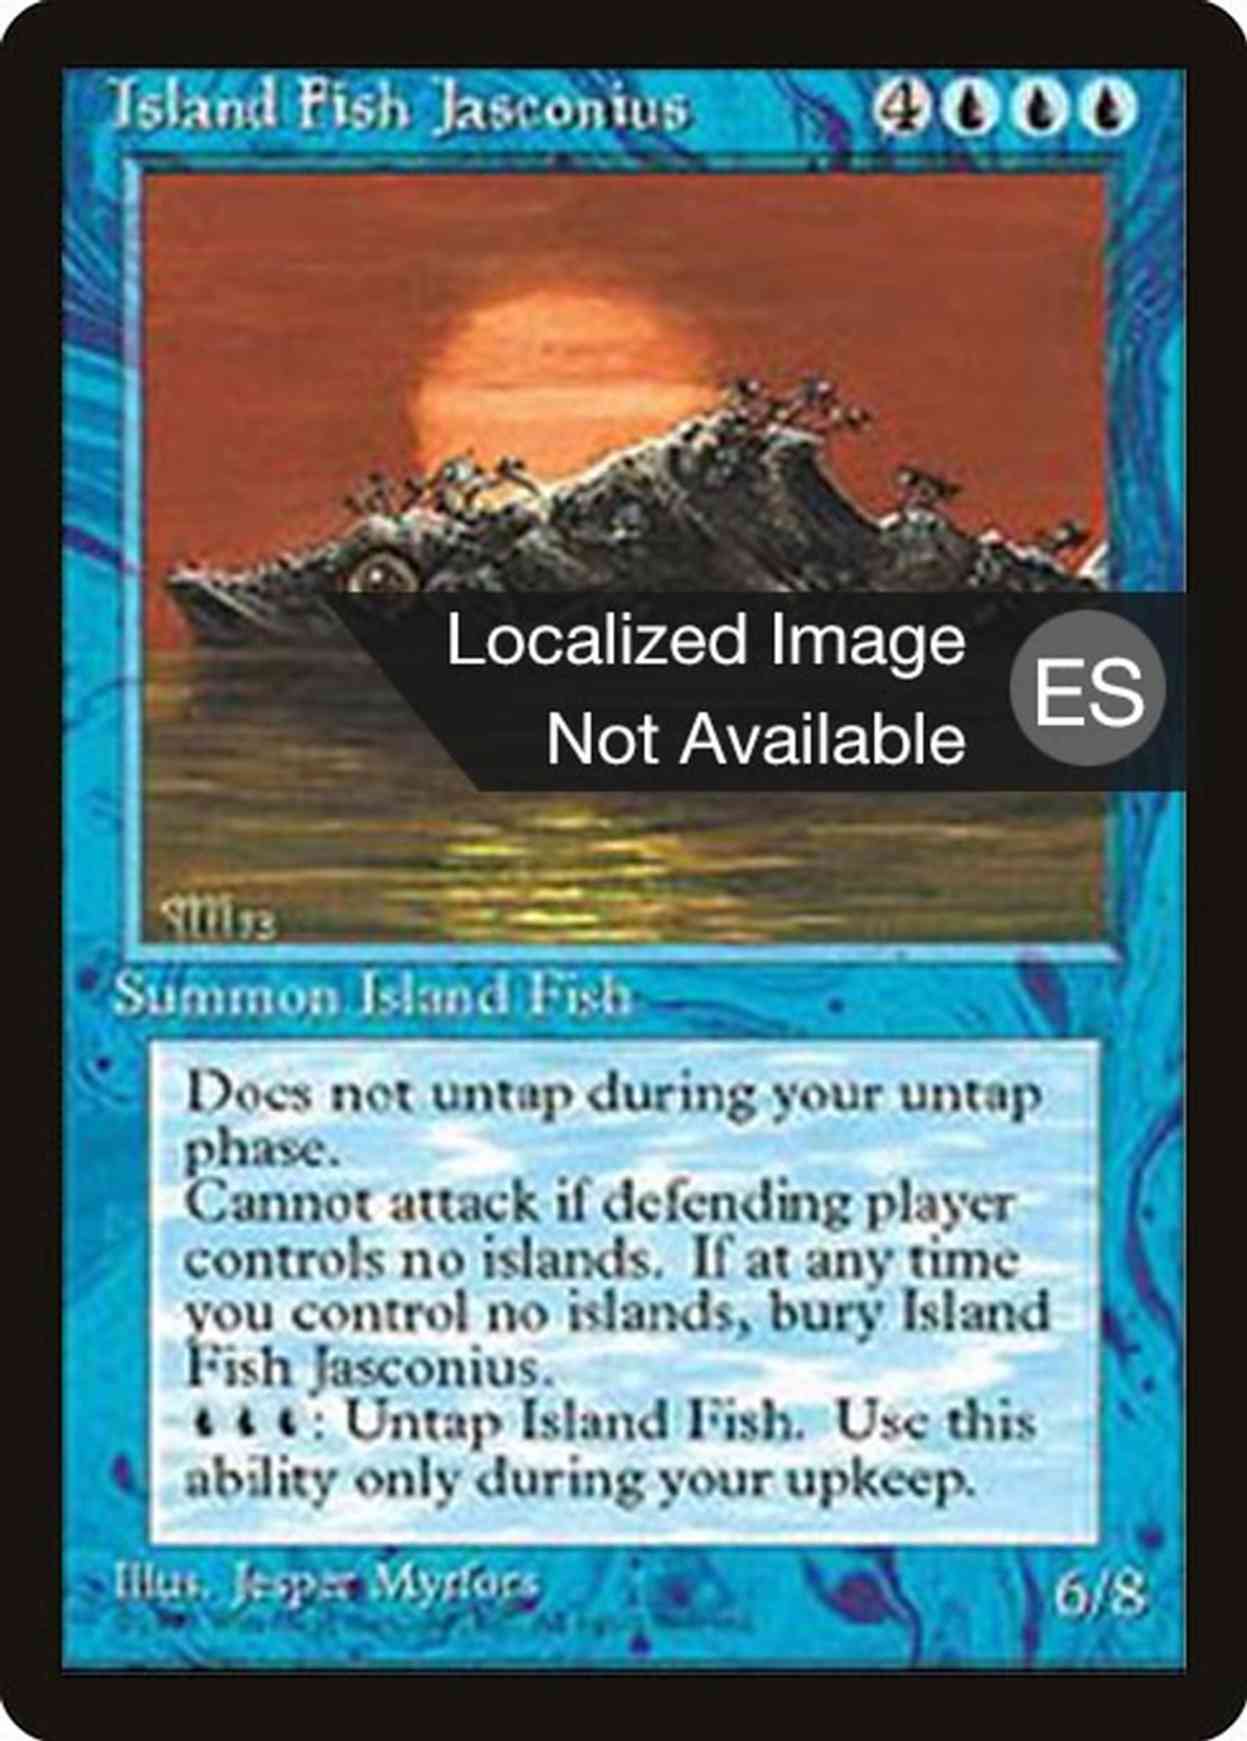 Island Fish Jasconius magic card front